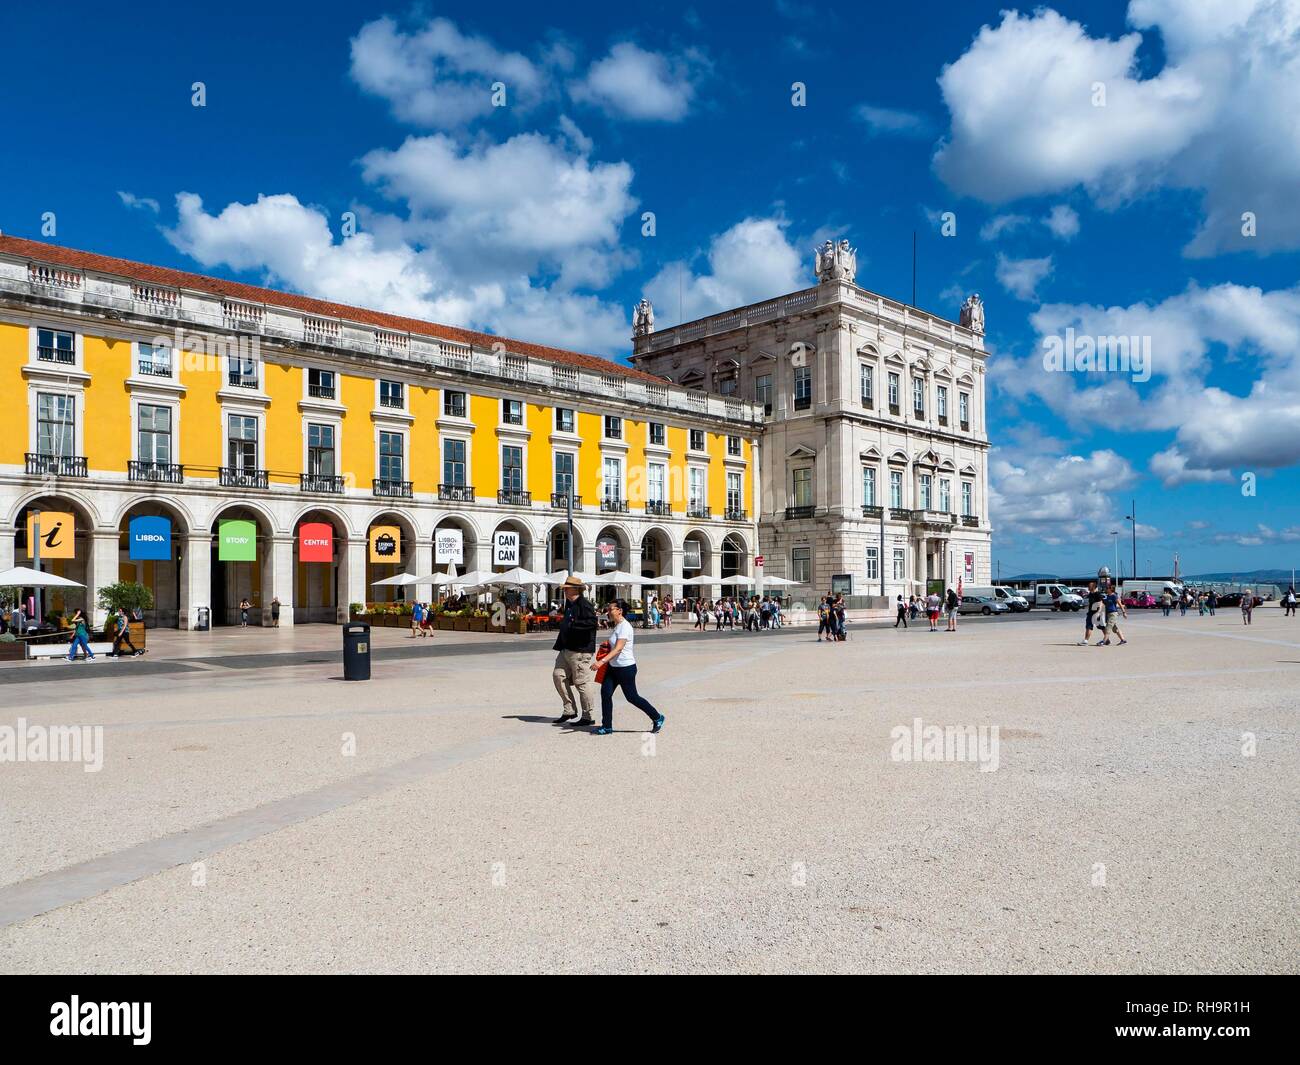 Place of Commerce, Praça do Comercio, Baixa, Lisbon, Portugal Stock Photo